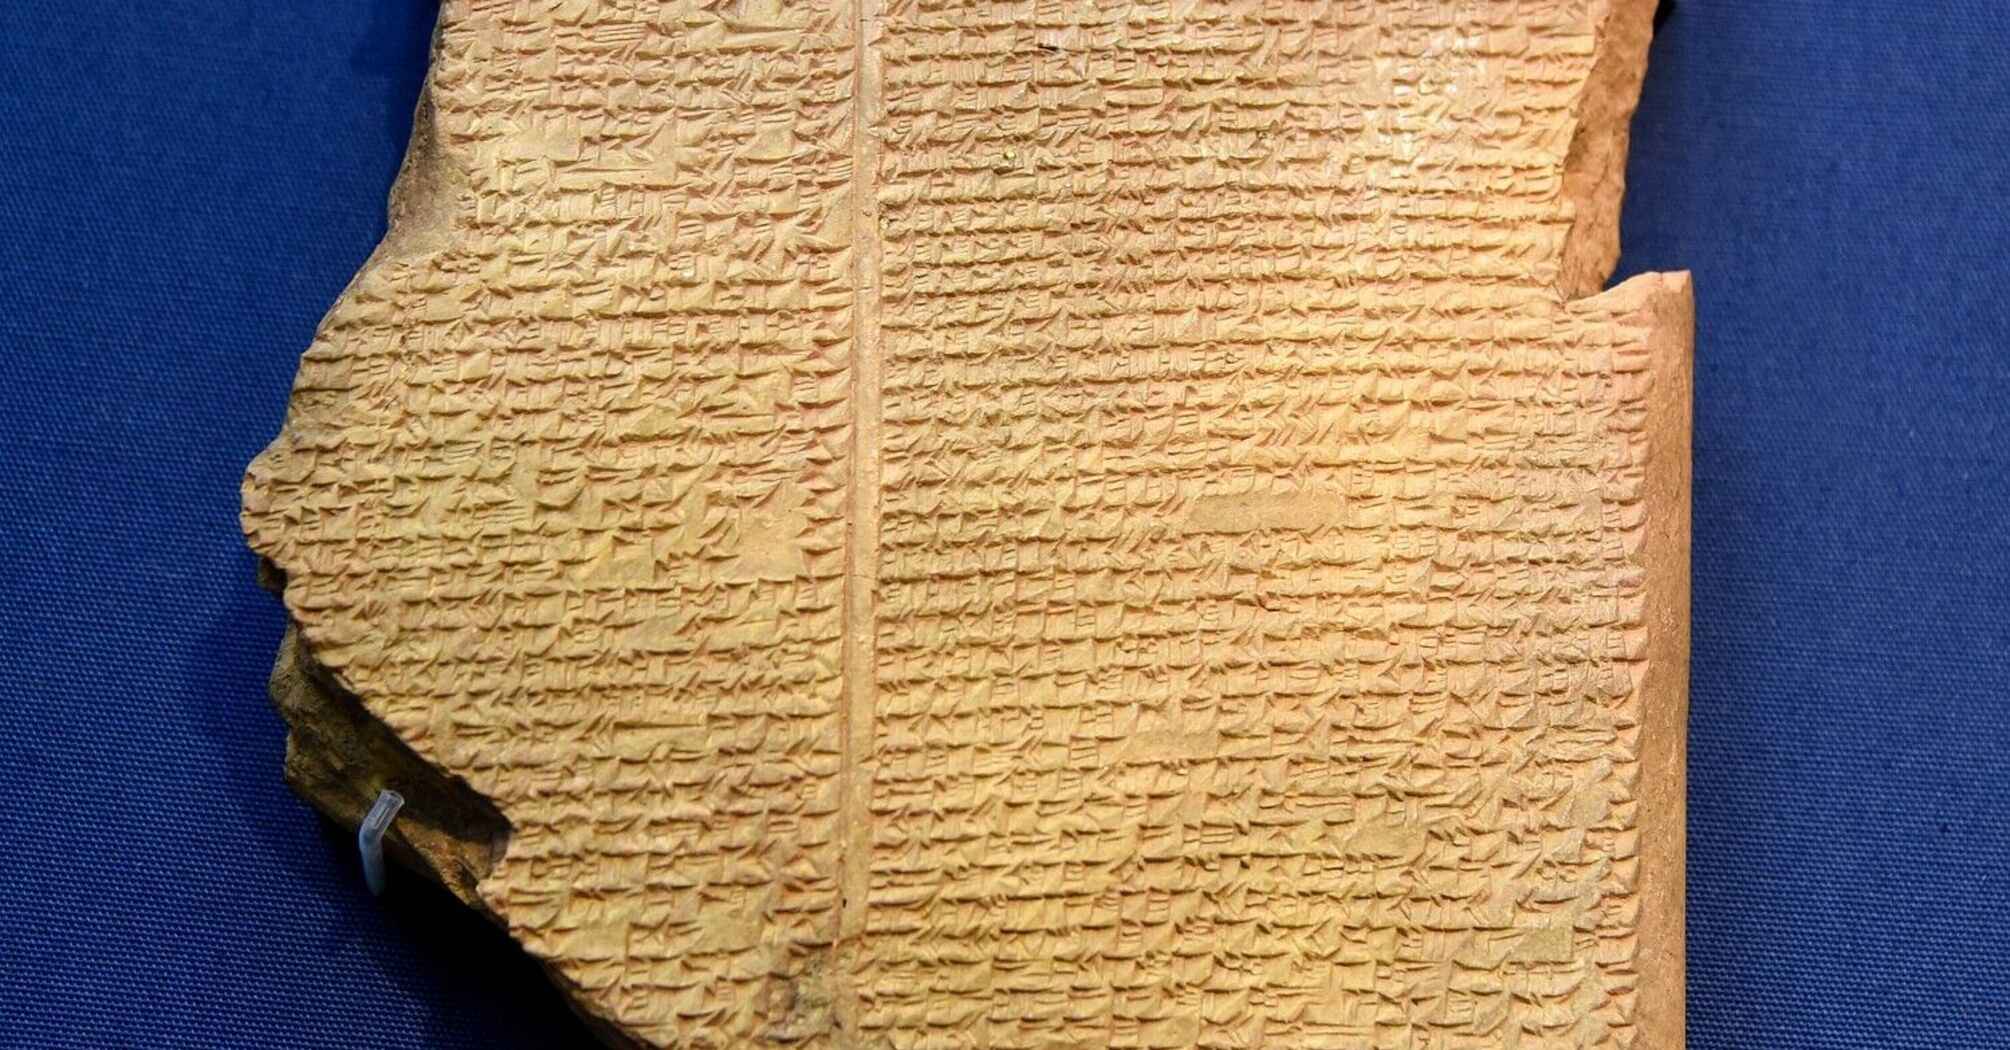 Gilgamesh flood tablet